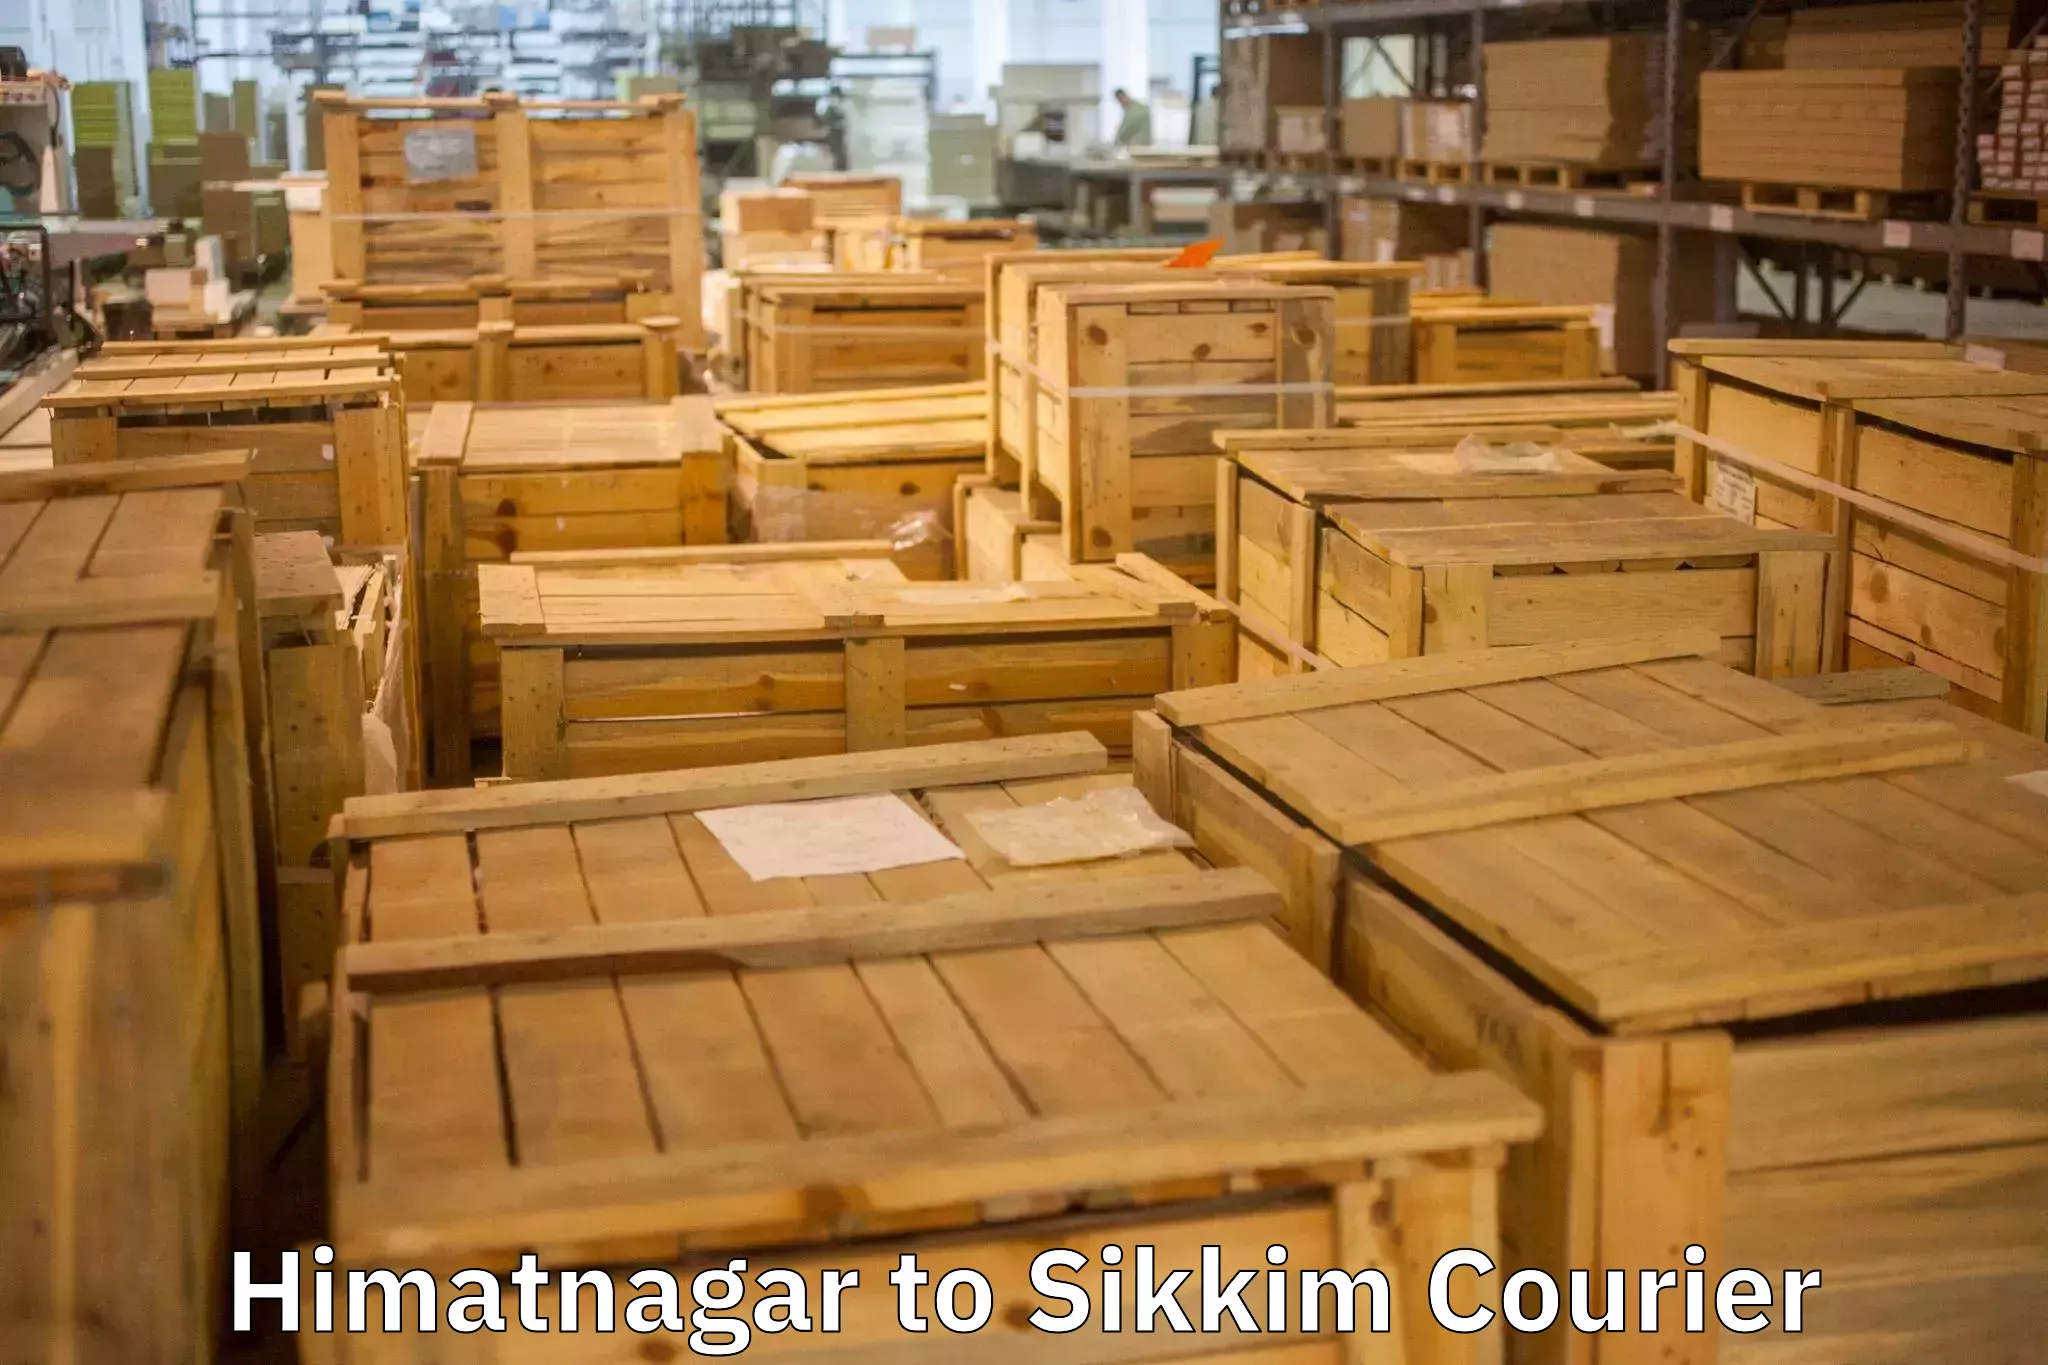 Skilled furniture transport Himatnagar to Rangpo